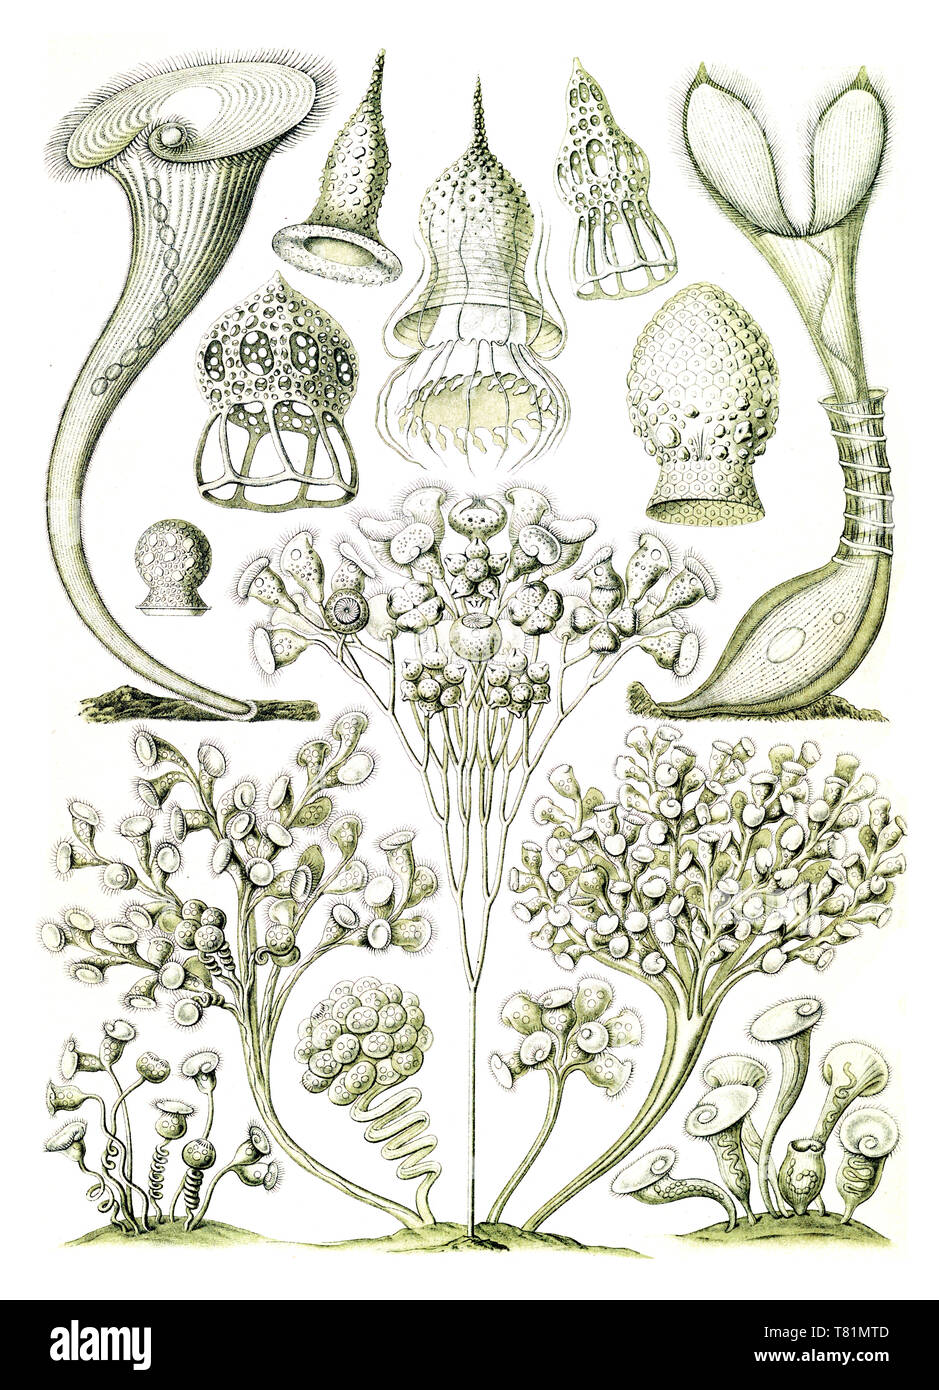 Ernst Haeckel, Wimpertierchen, Protozoen Stockfoto